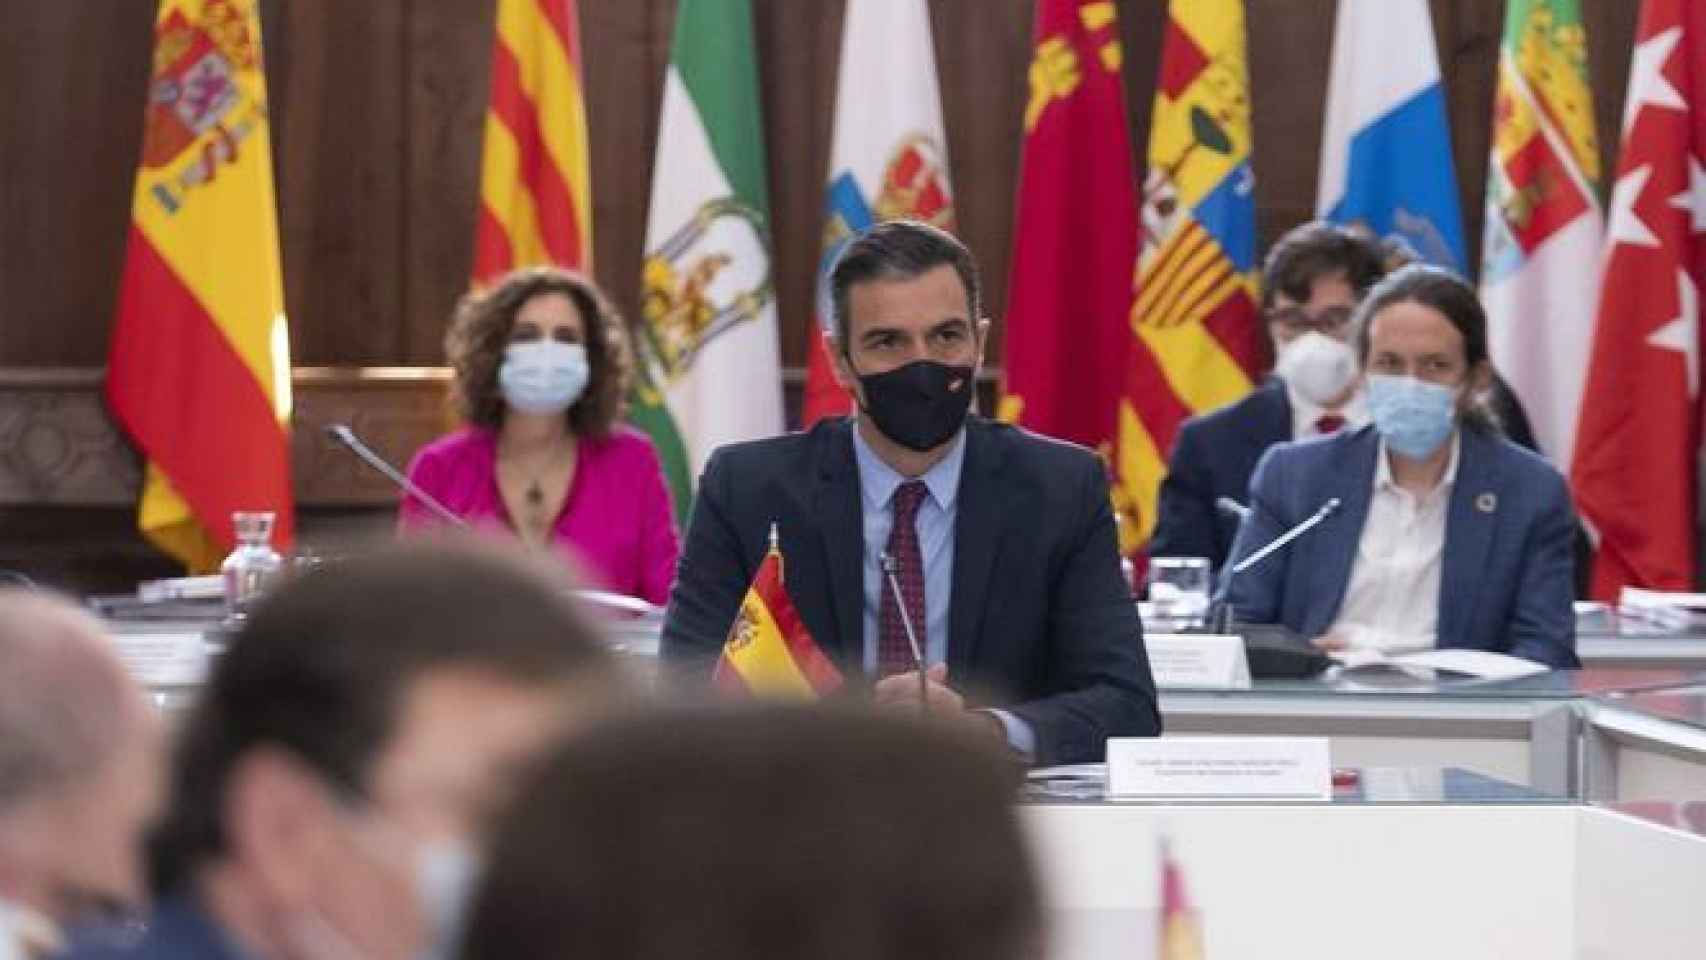 María Jesús Montero, Pedro Sánchez y Pablo Iglesias en la priemra Conferencia de presidentes tras la pandemia.